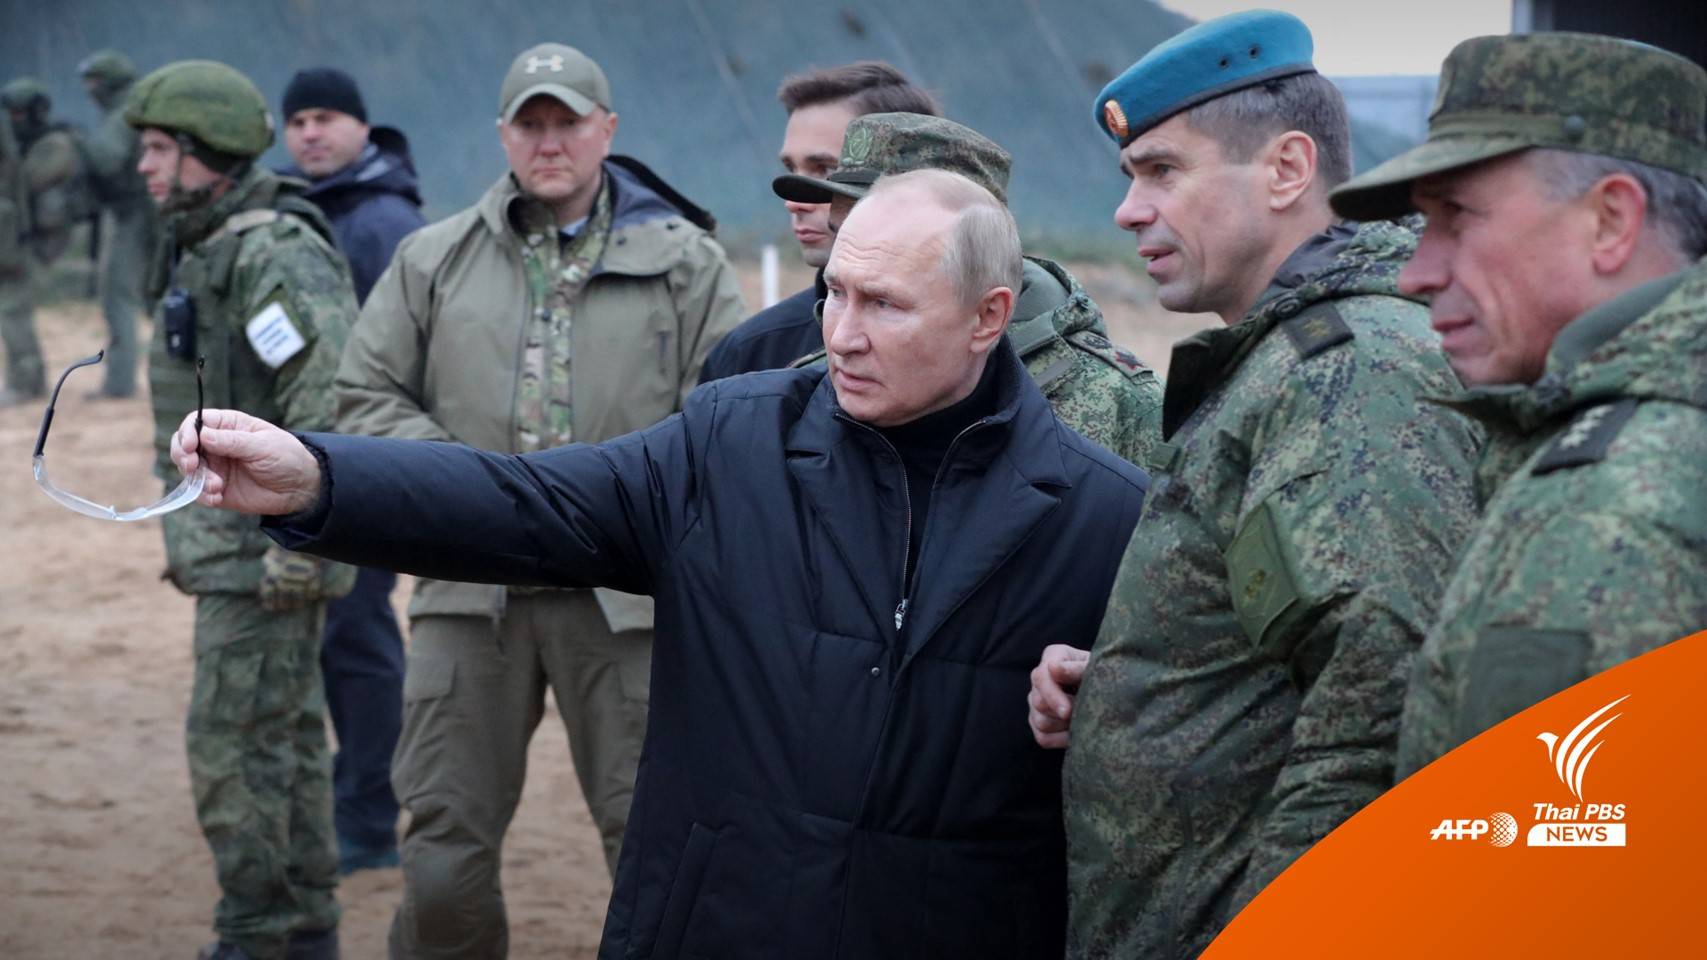  "ปูติน" ลงพื้นที่ตรวจเยี่ยมทหาร หลังประกาศยกระดับโจมตียูเครน